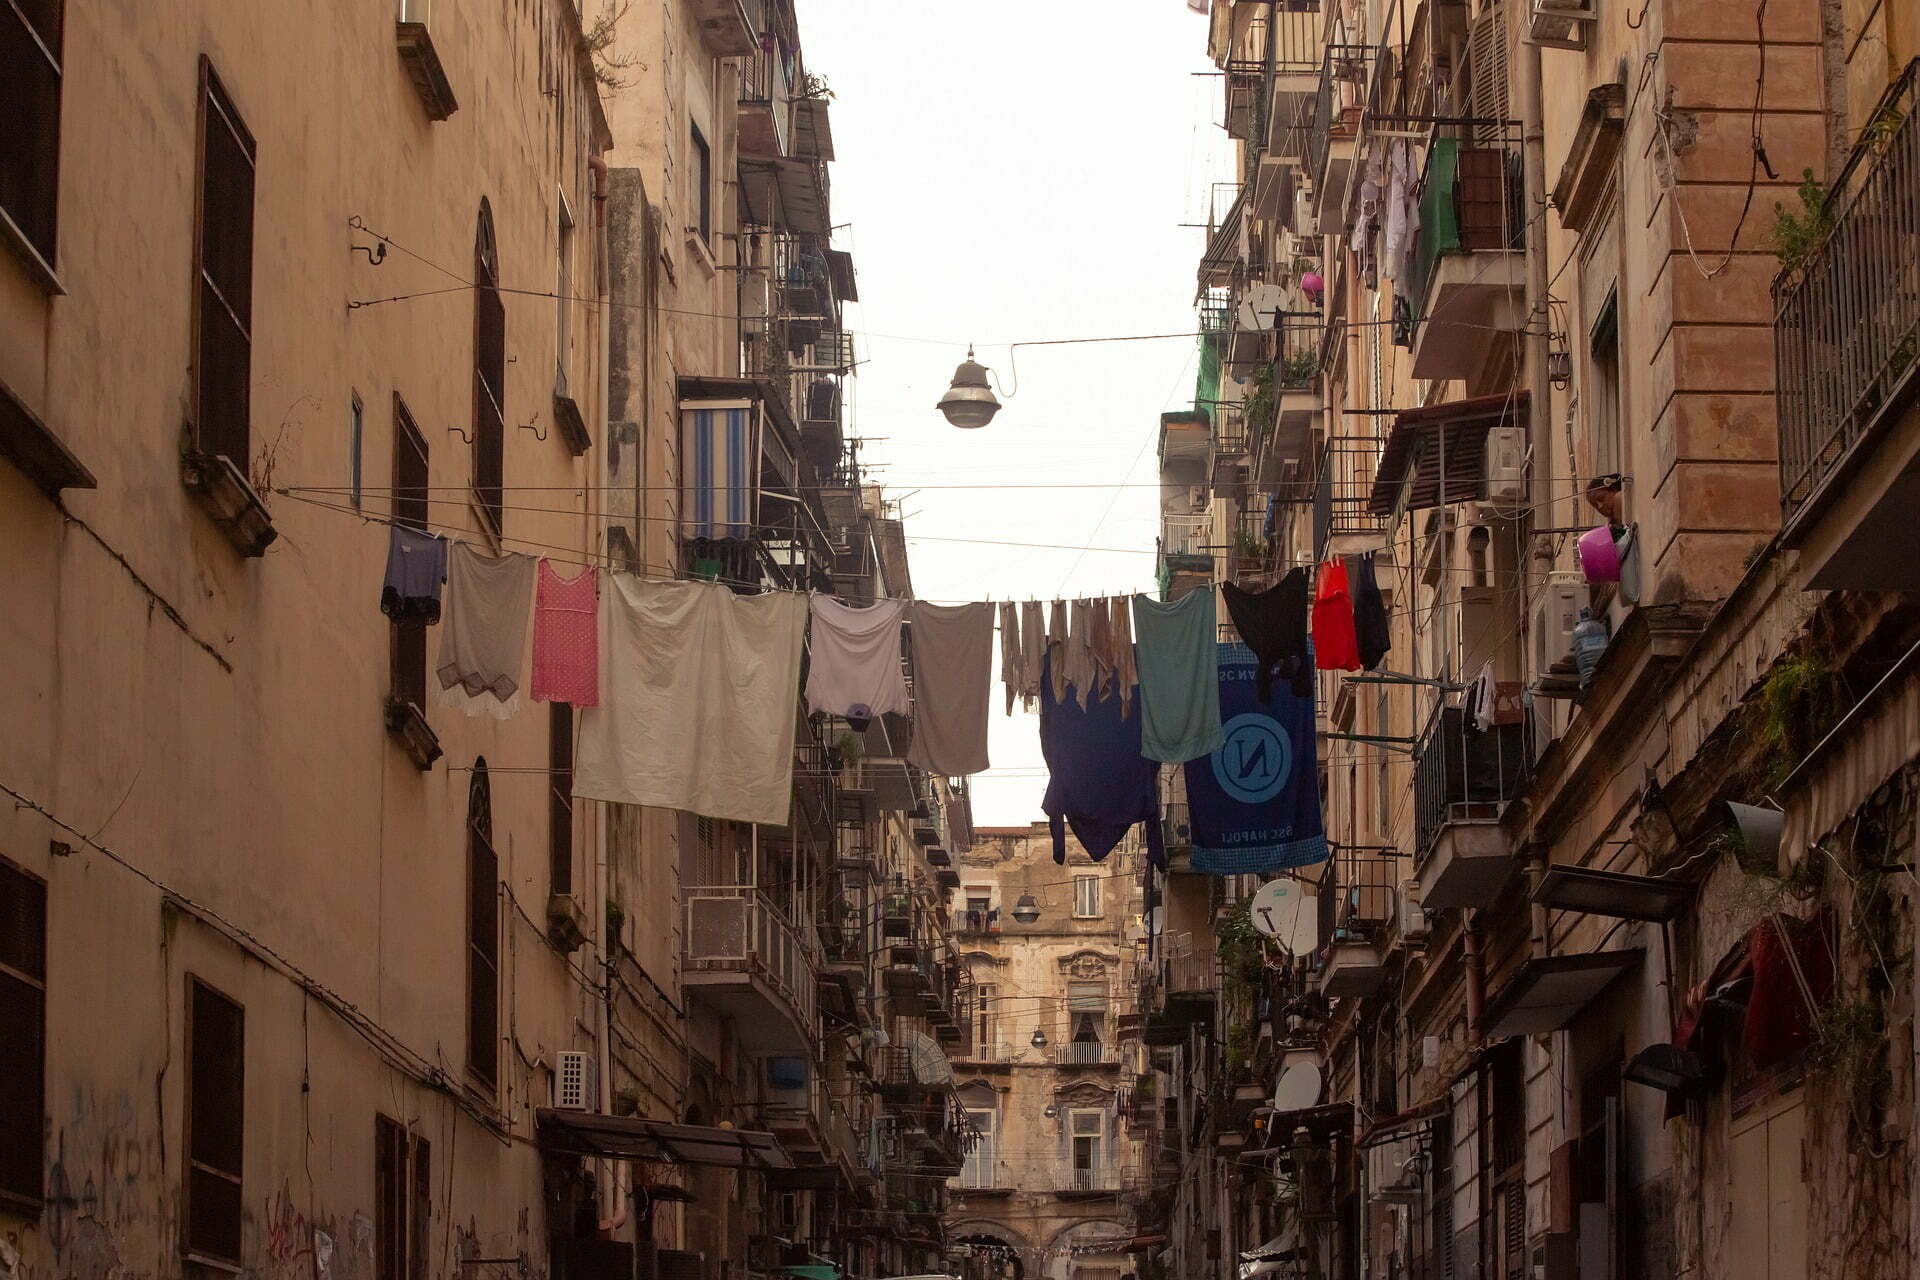 Neapolitan alley